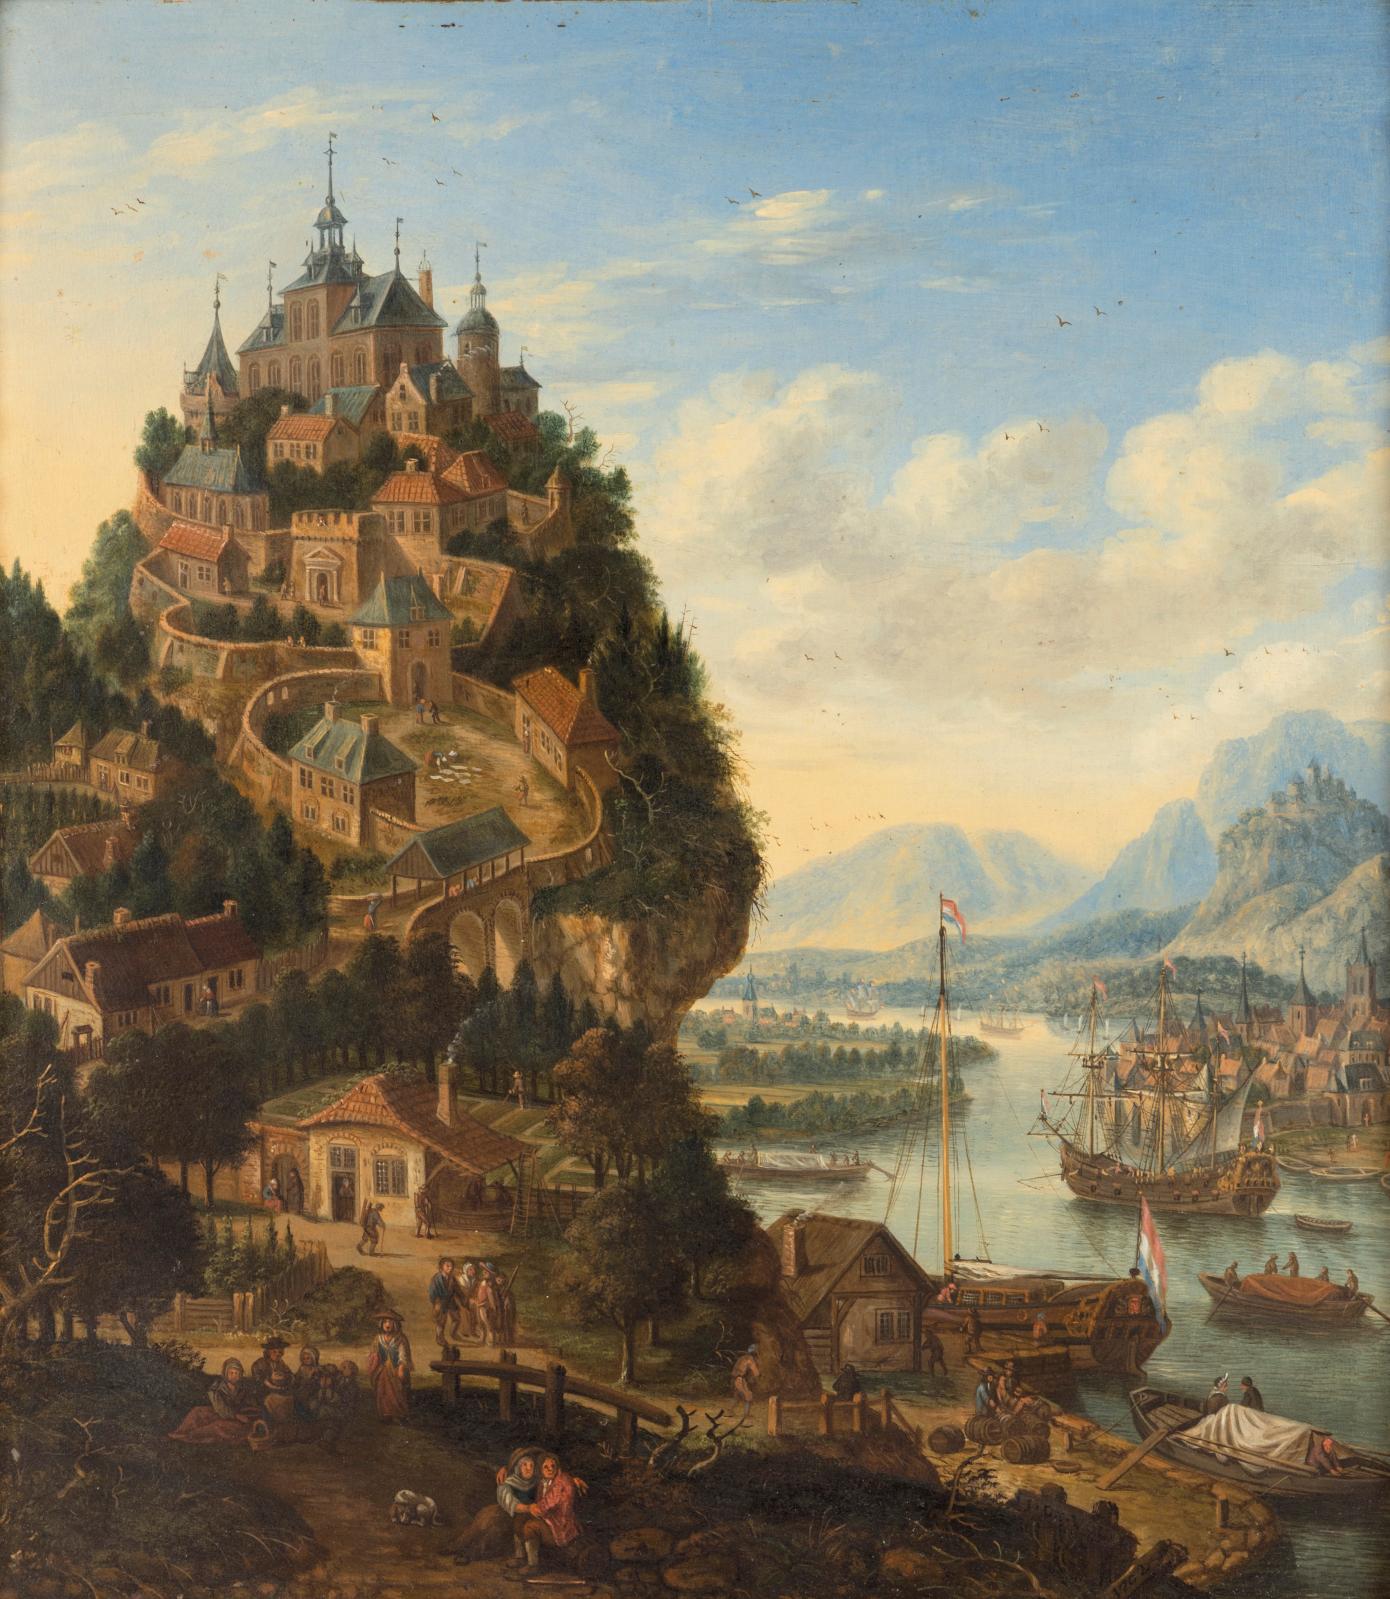 Un paysage imaginaire de Johannes de Vou